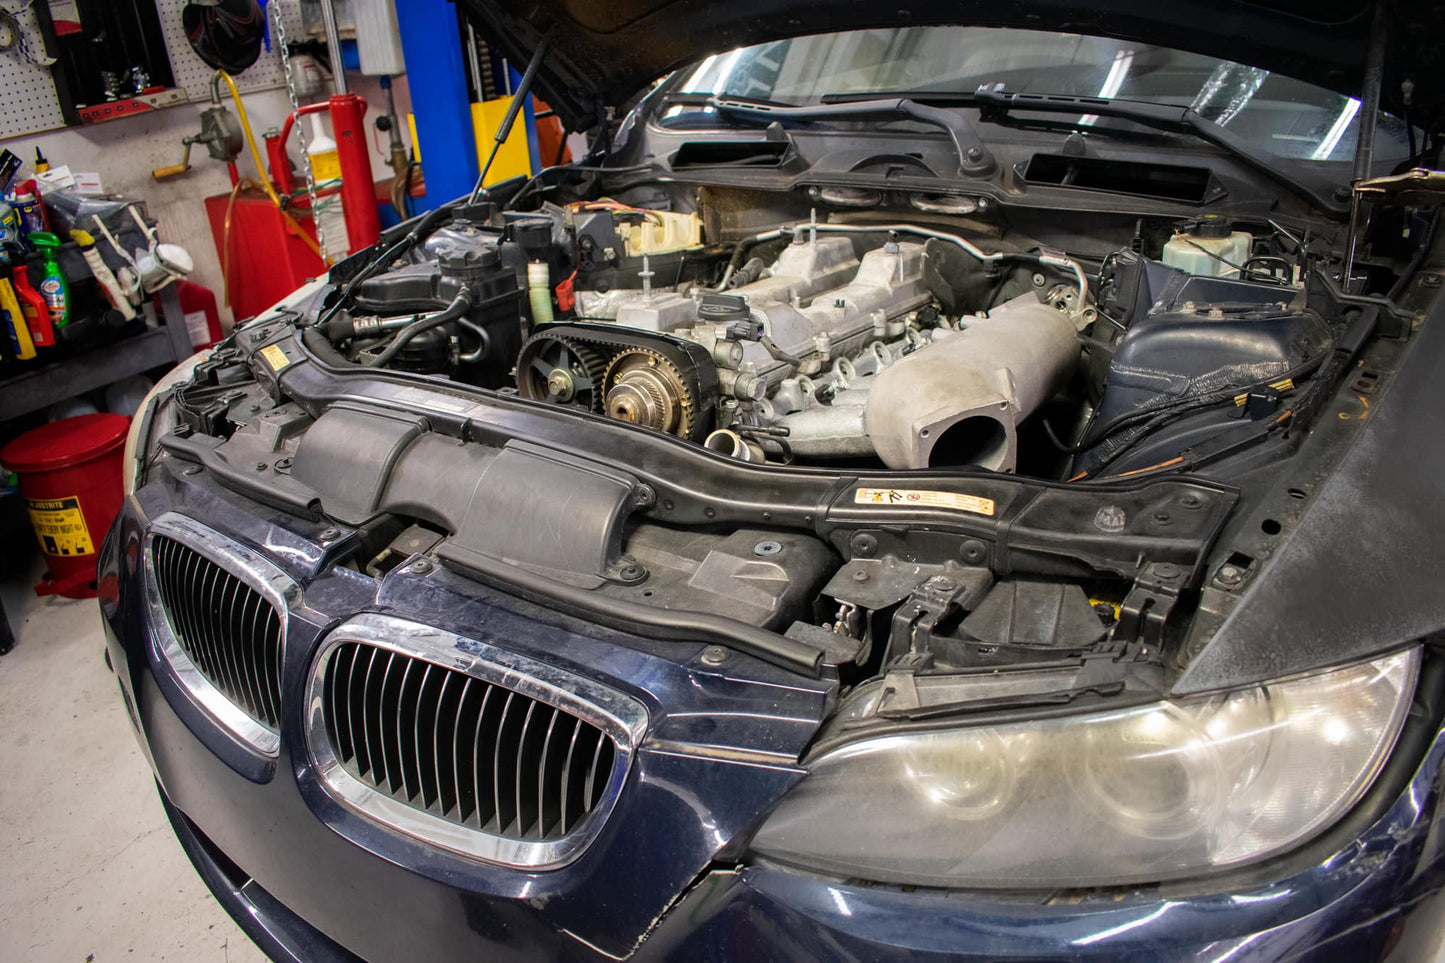 BMW E46 vs E90 - Which Car Does The Mechanic Prefer? 